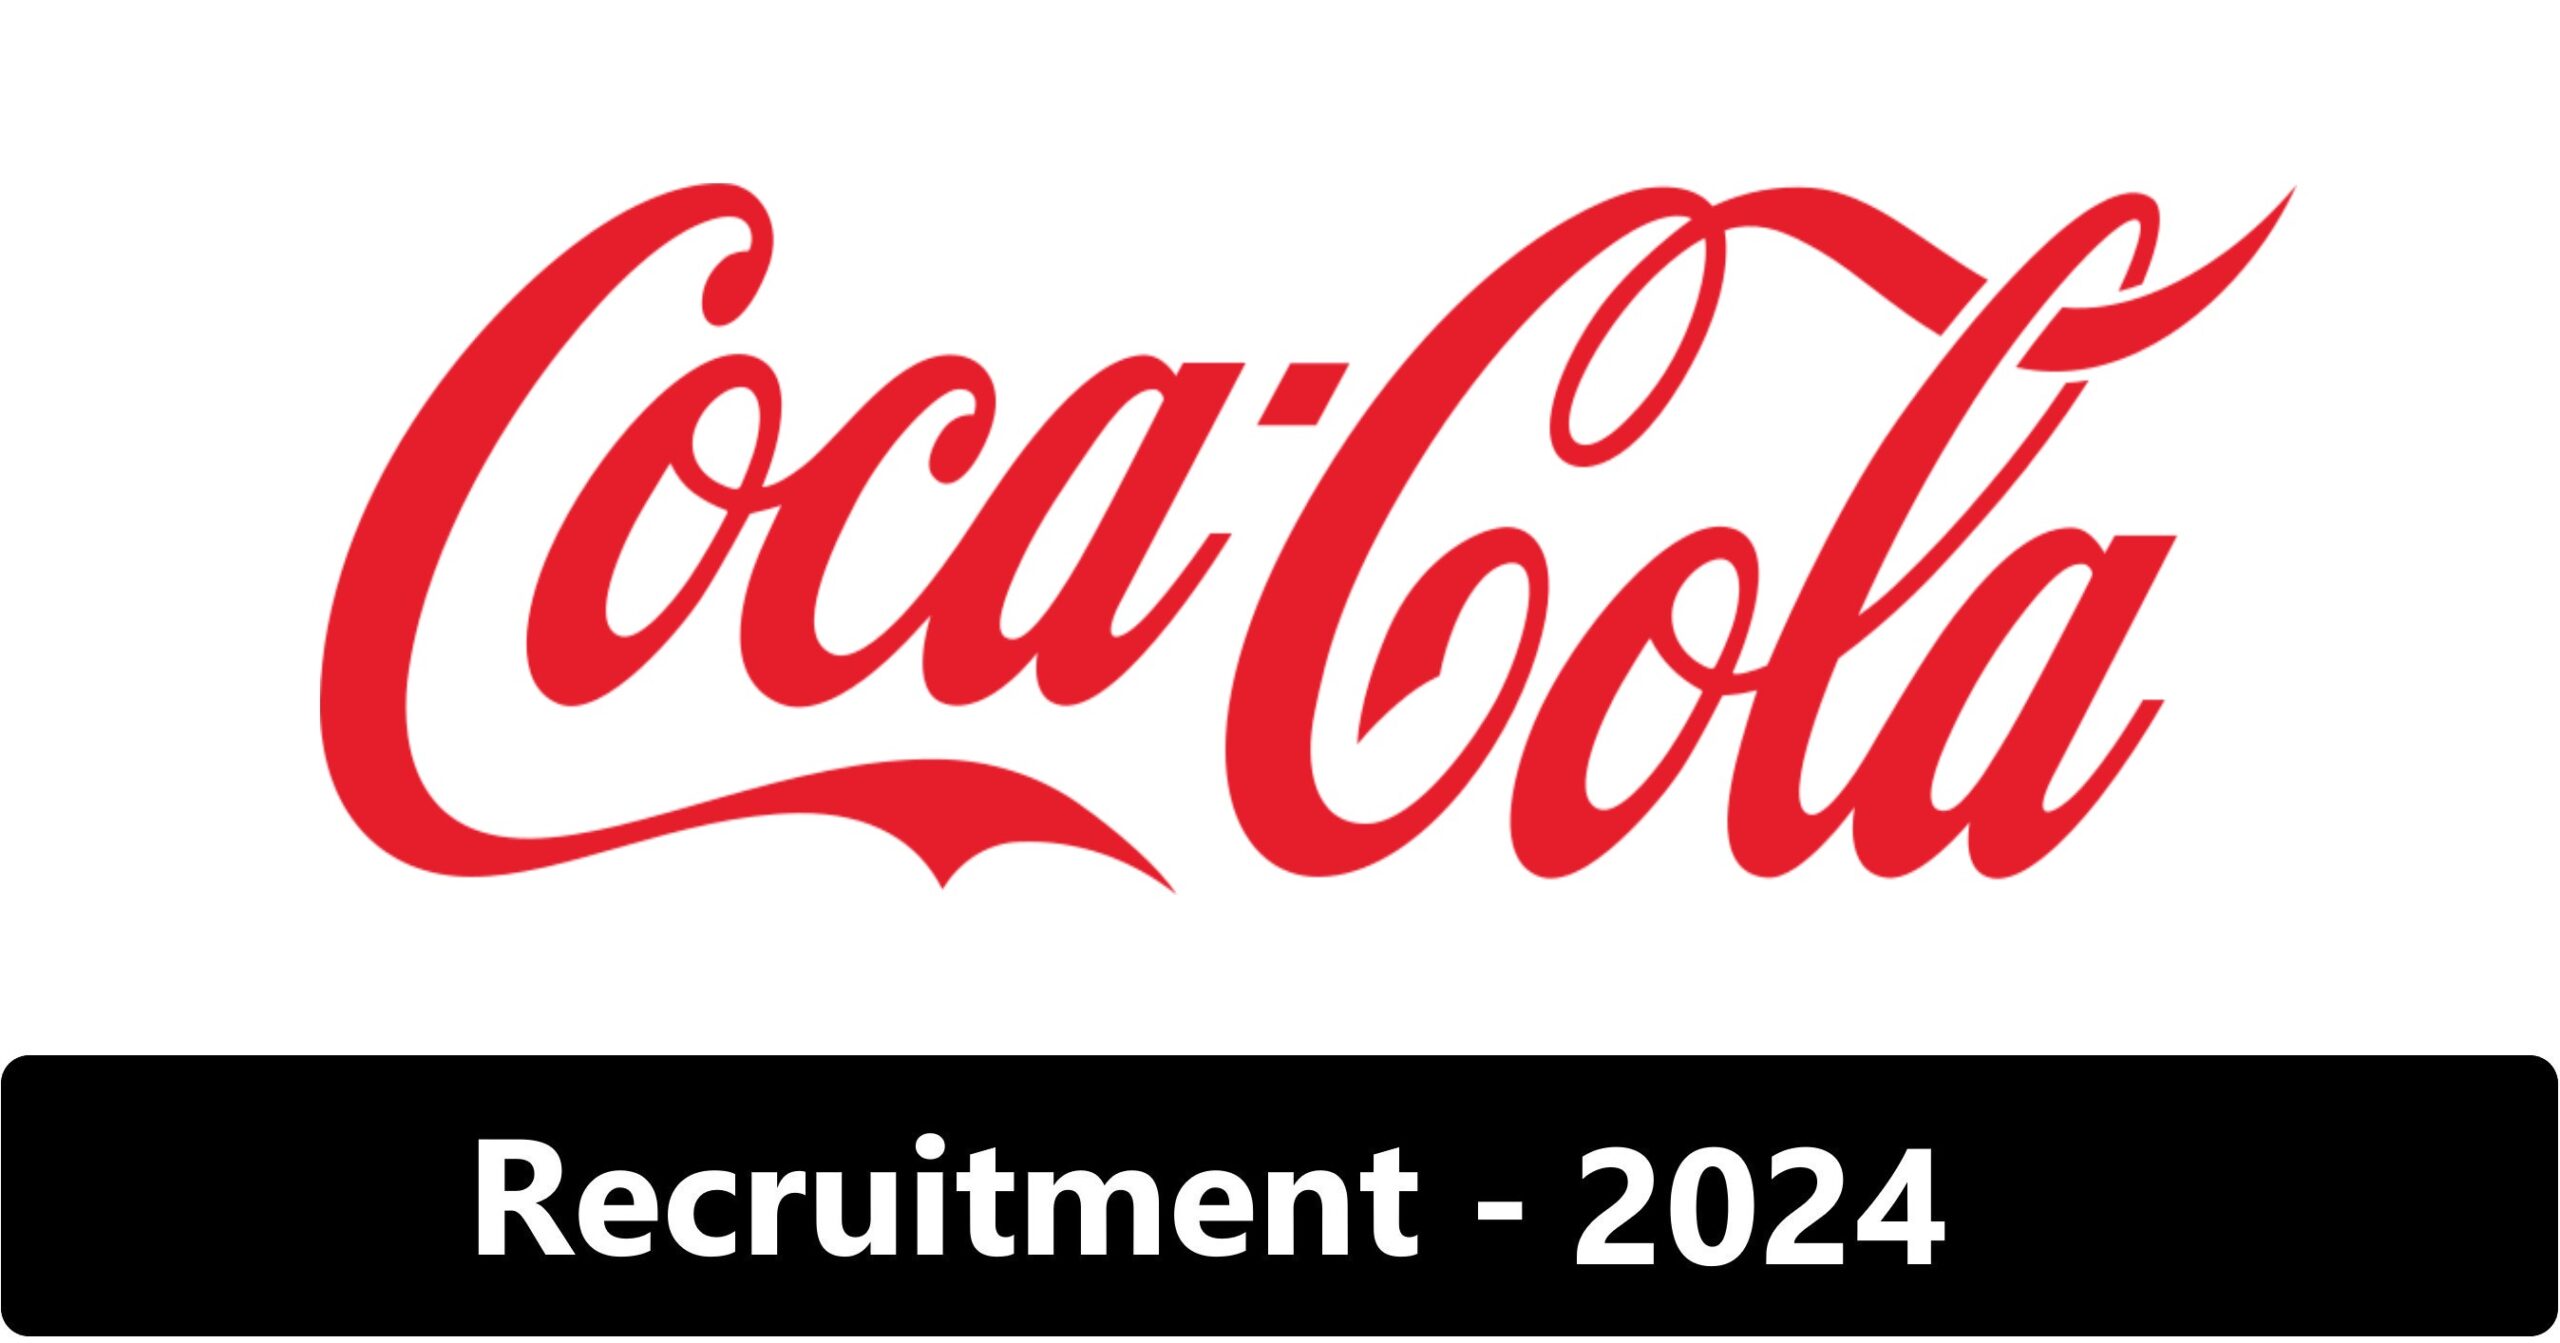 Coca-Cola Digital Innovation Summer Internship 2024